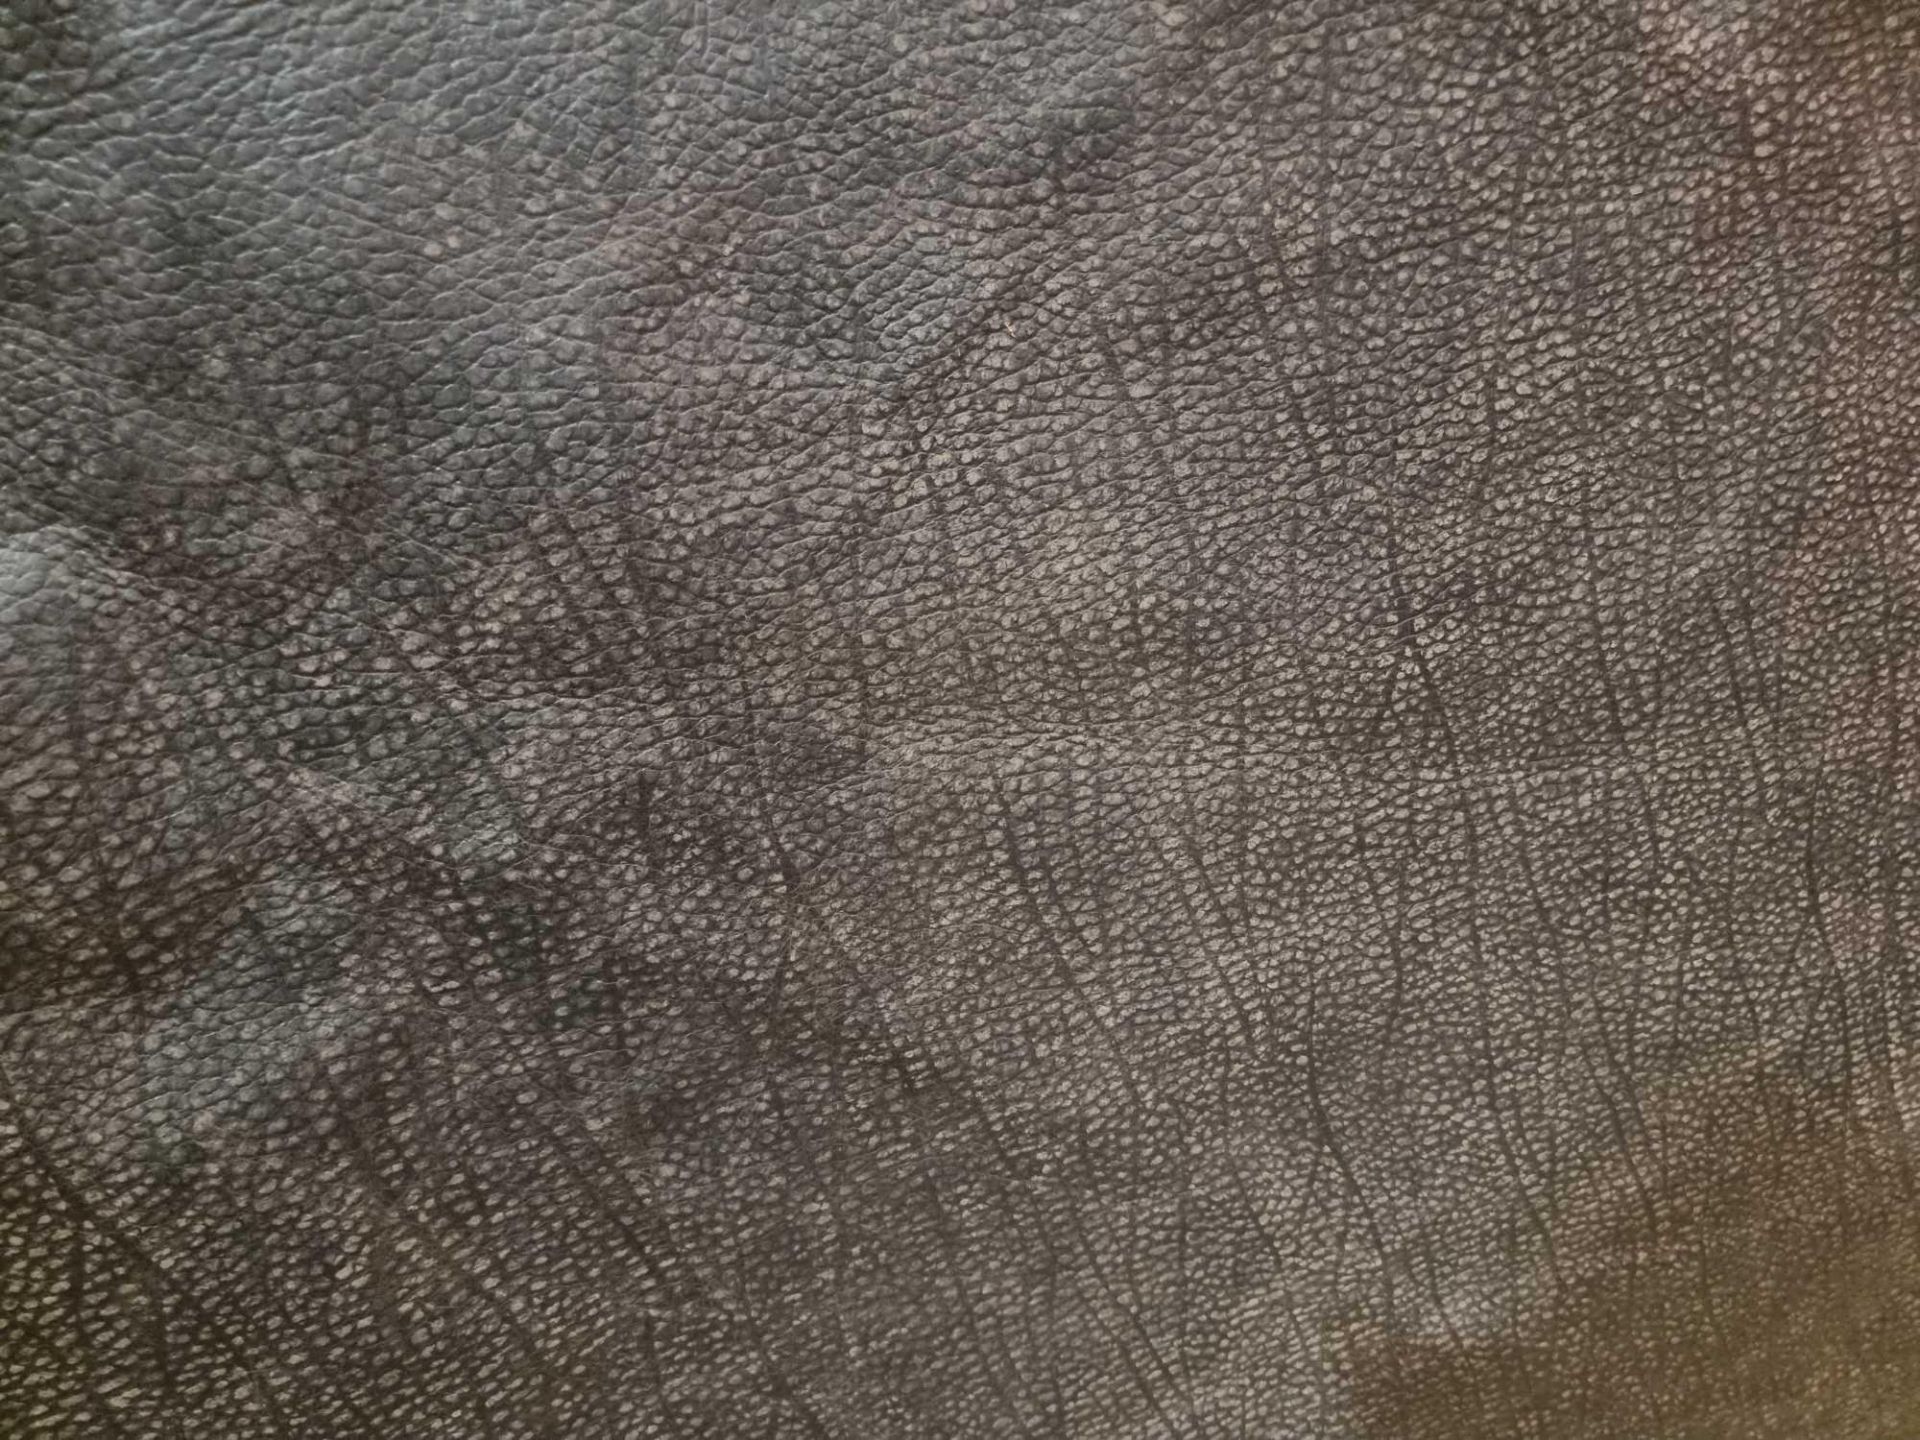 Chaps Satchel Conker Leather Hide approximately 4 2M2 2 1 x 2cm ( Hide No,195)